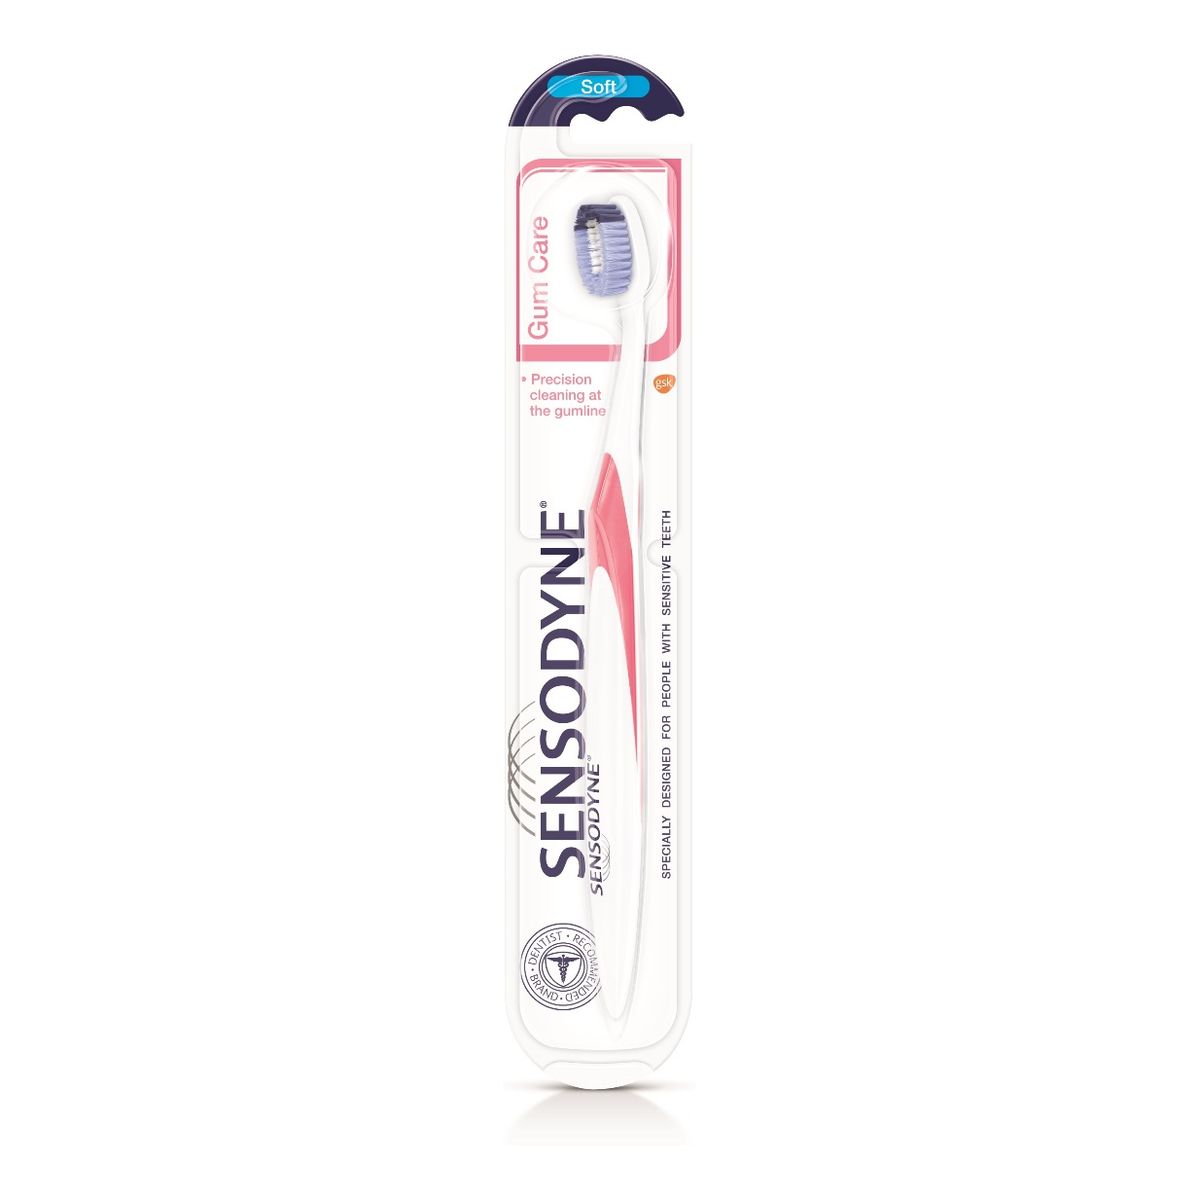 Sensodyne Gum care toothbrush szczoteczka do zębów soft 1szt